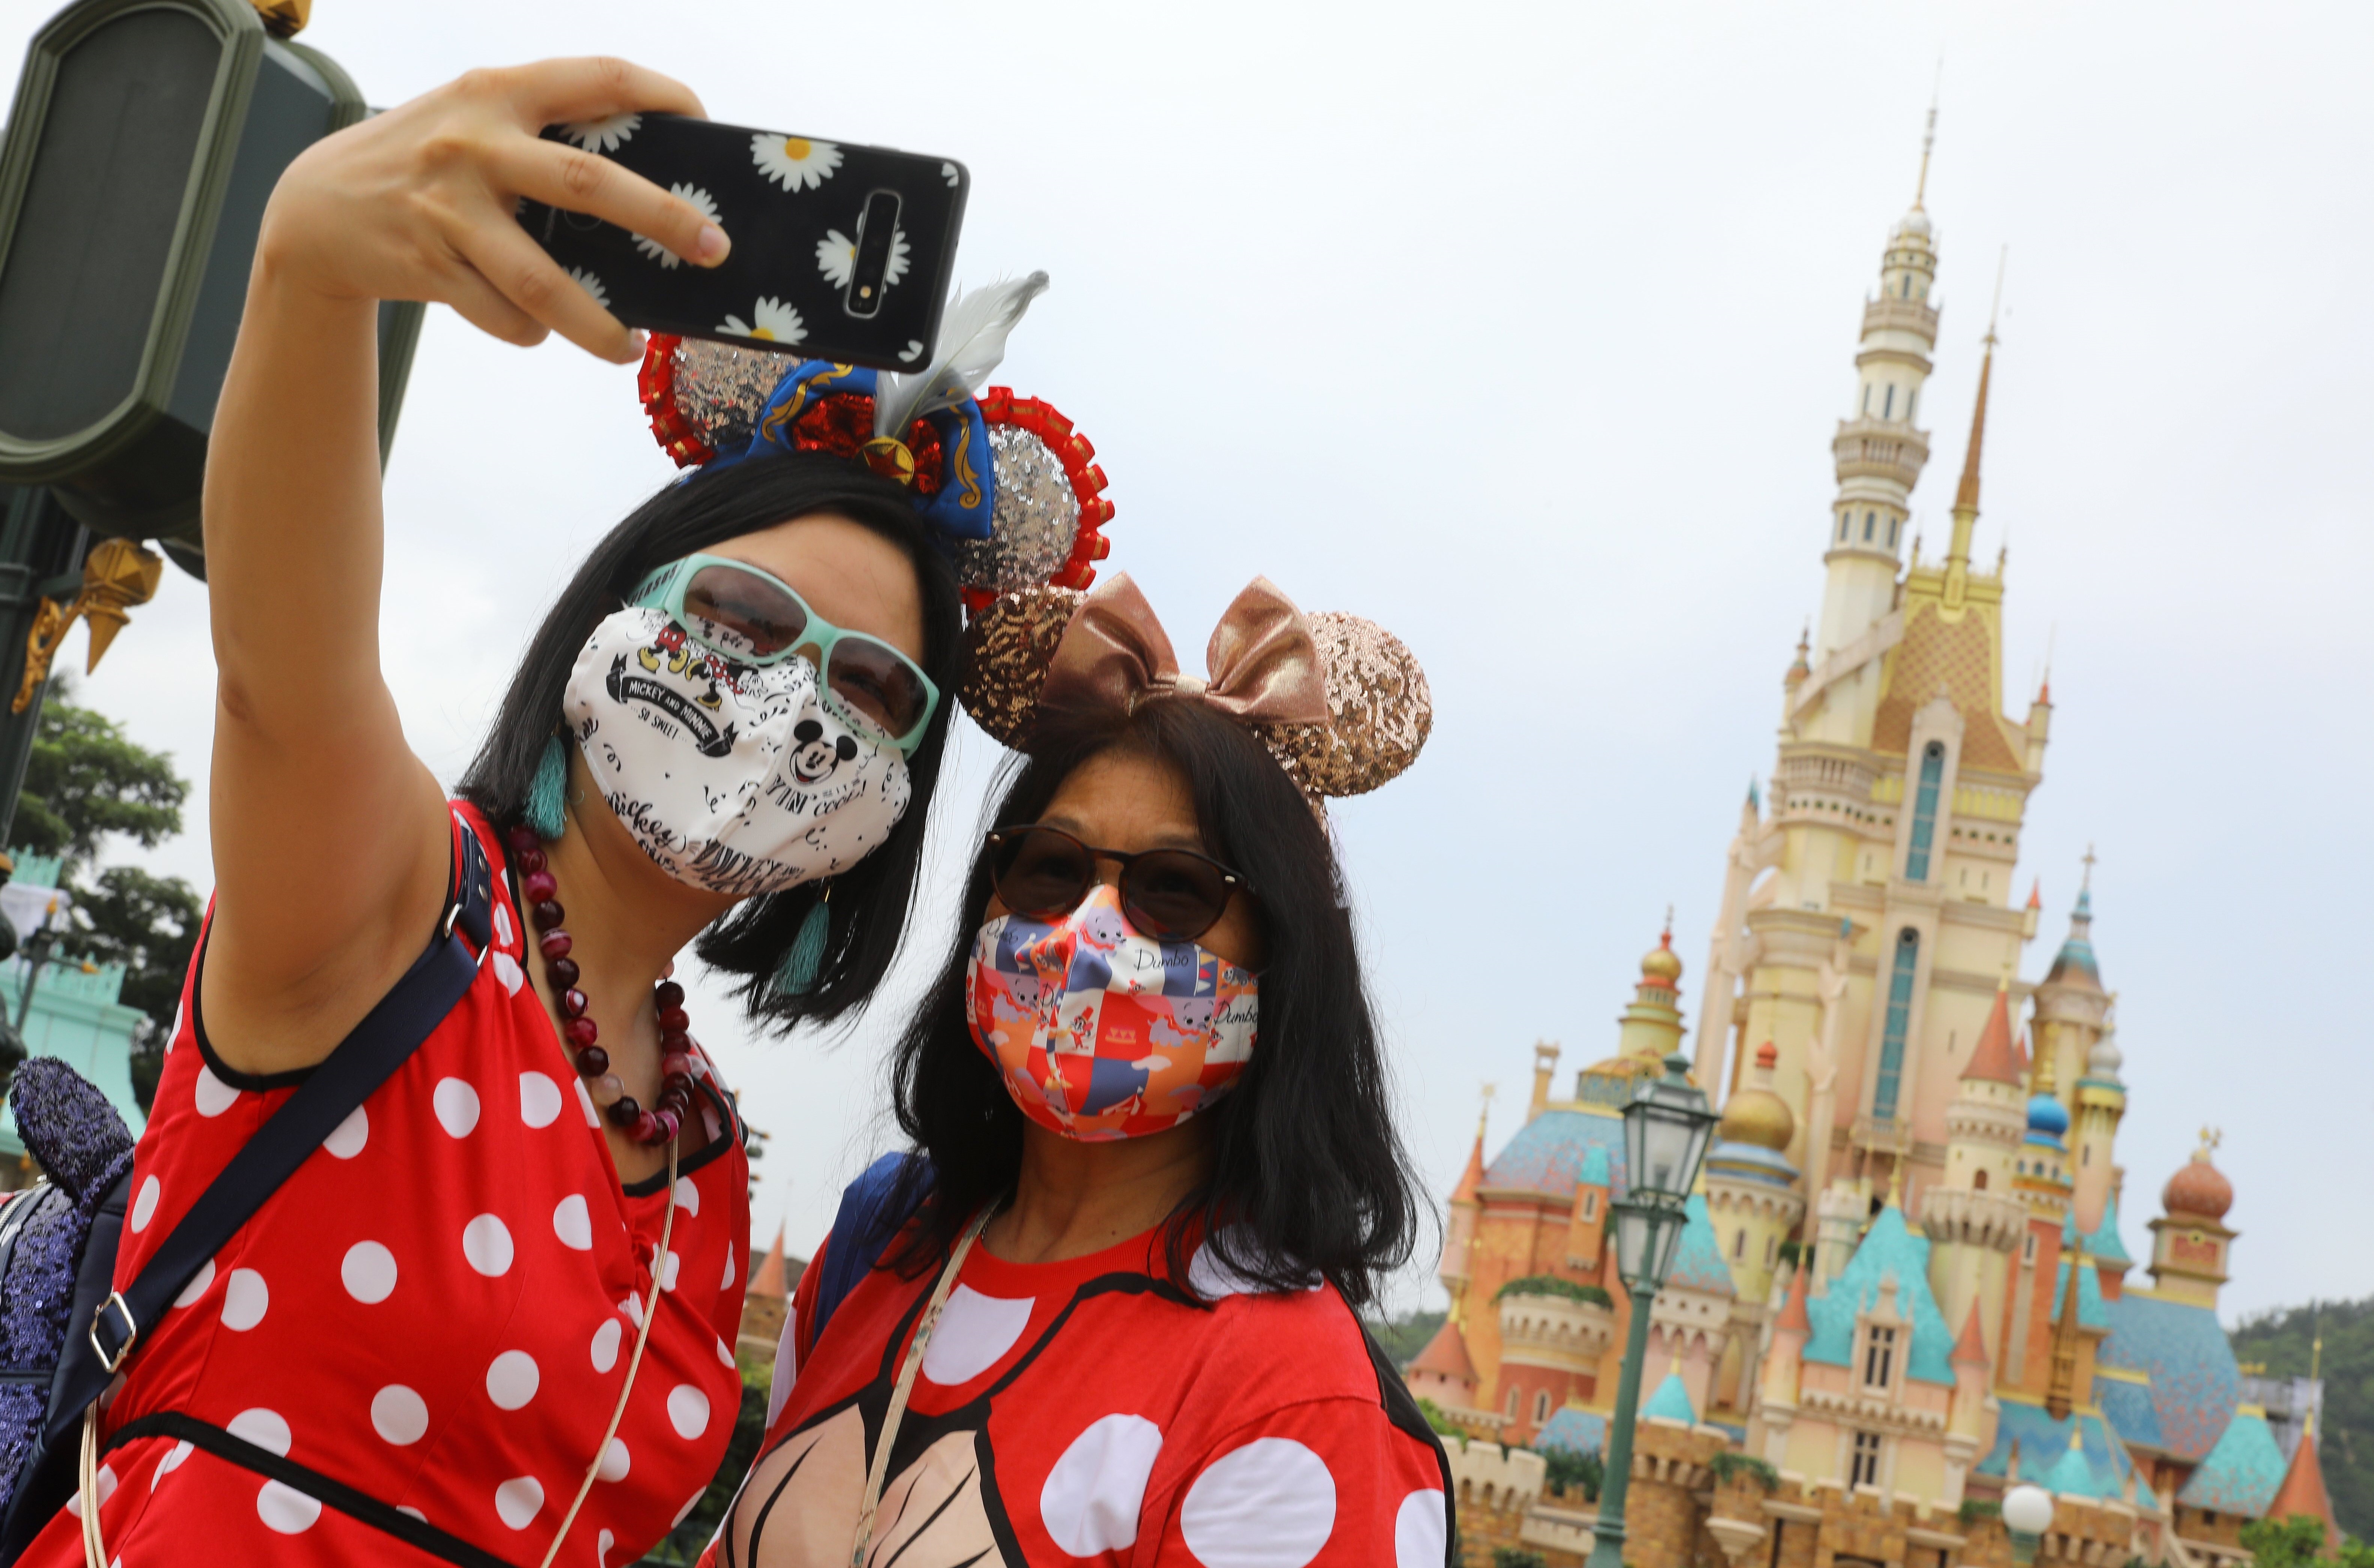 28/09/2020 Las instlaciones de Disneyland en Hong Kong han reabierto sus puertas dos meses después de permanecer cerradas por culpa del coronavirus..


DICKSON LEE / ZUMA PRESS / CONTACTOPHOTO
